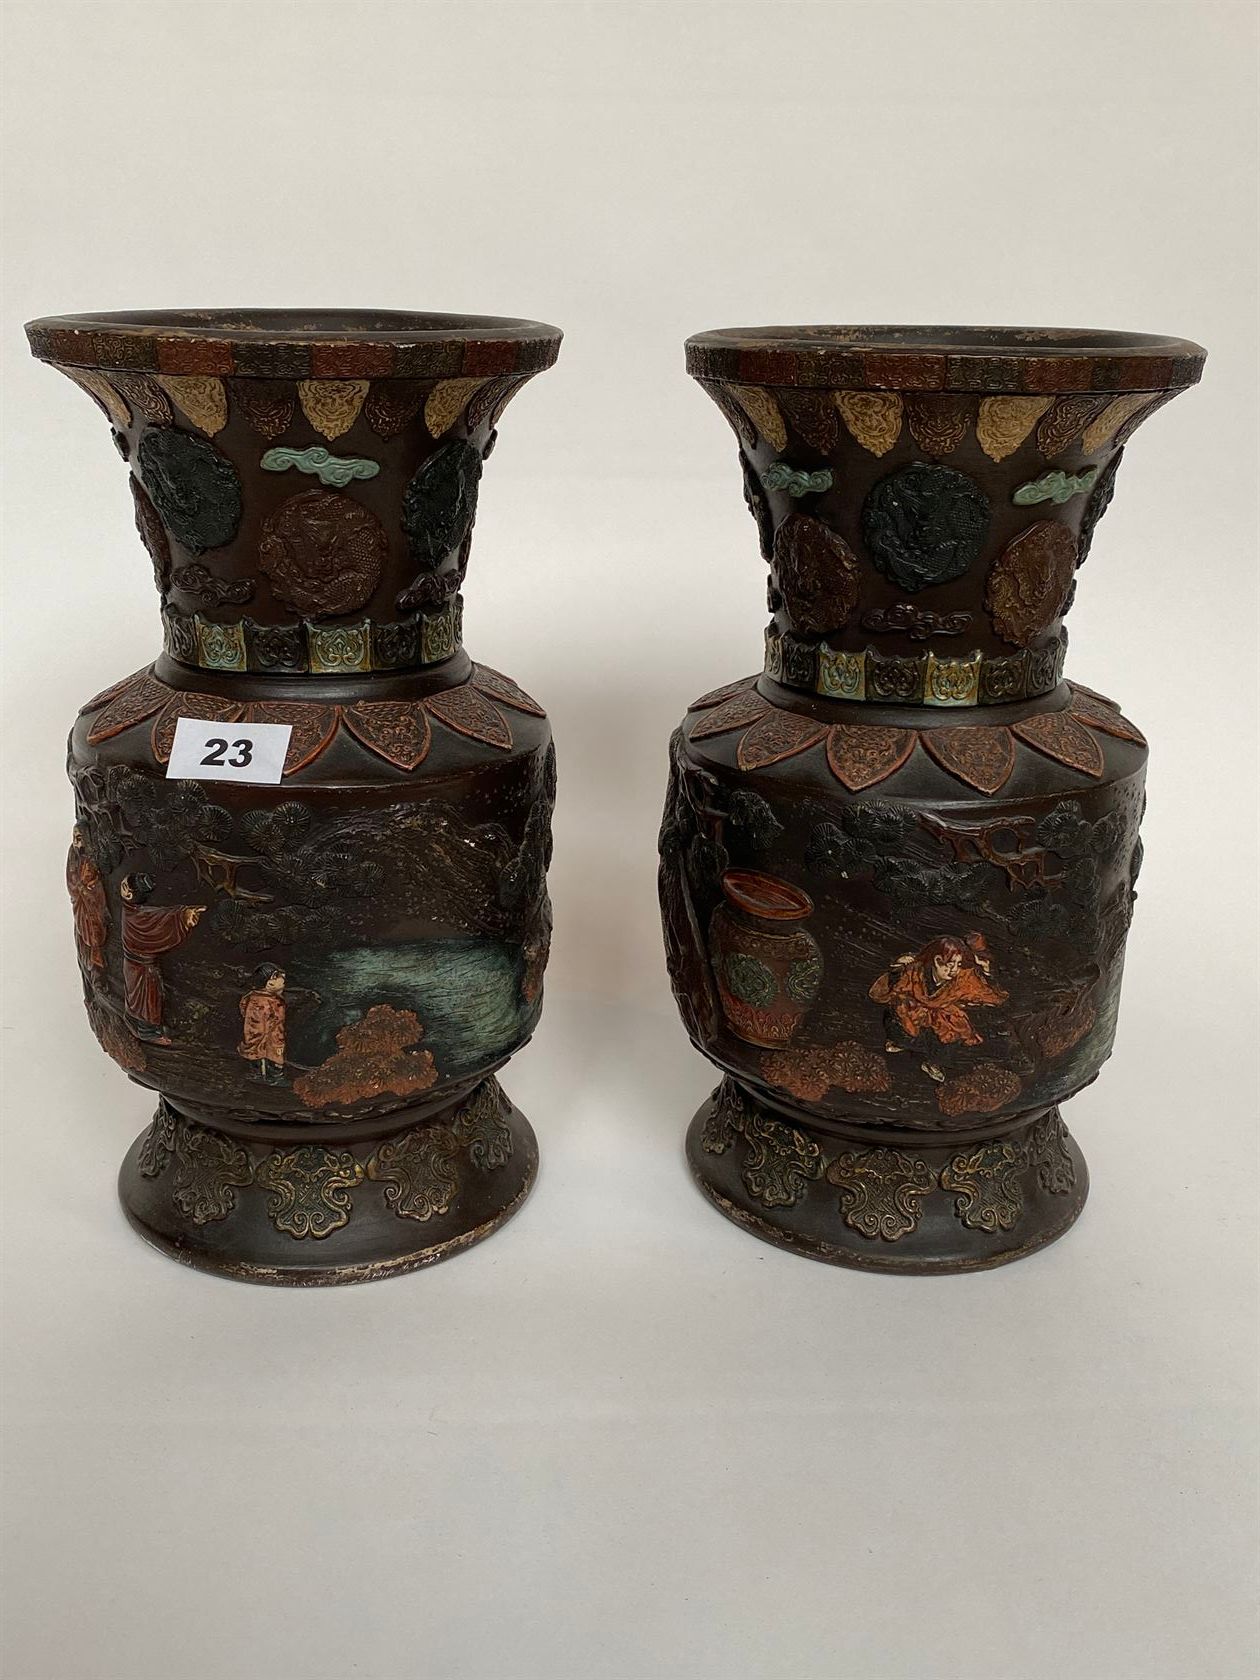 Null 一对多色彩斑的陶器花瓶，上面装饰着壁炉、奖章和人物场景（轻微磨损）。日本，19世纪末-20世纪初。高32厘米。